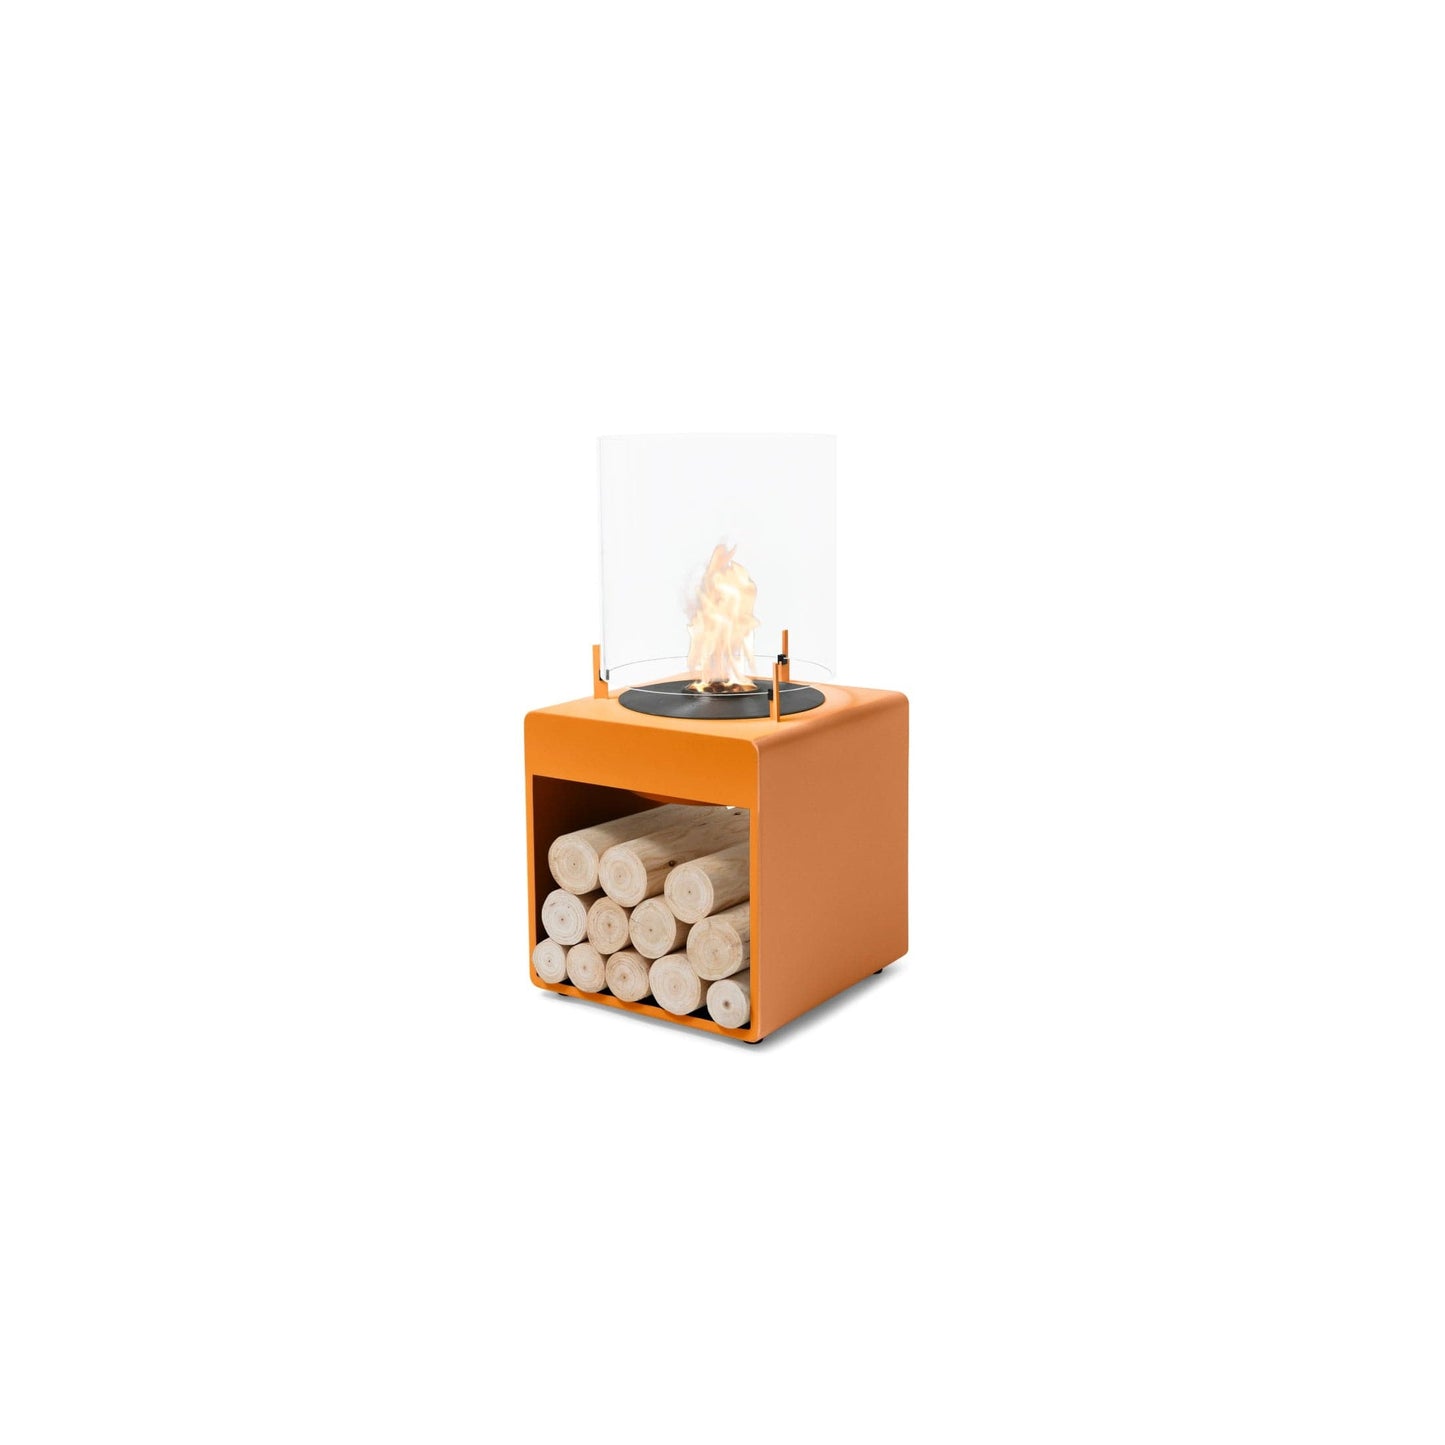 EcoSmart Fire Pop 3L 33" Orange Freestanding Designer Fireplace with Black Burner by MAD Design Group